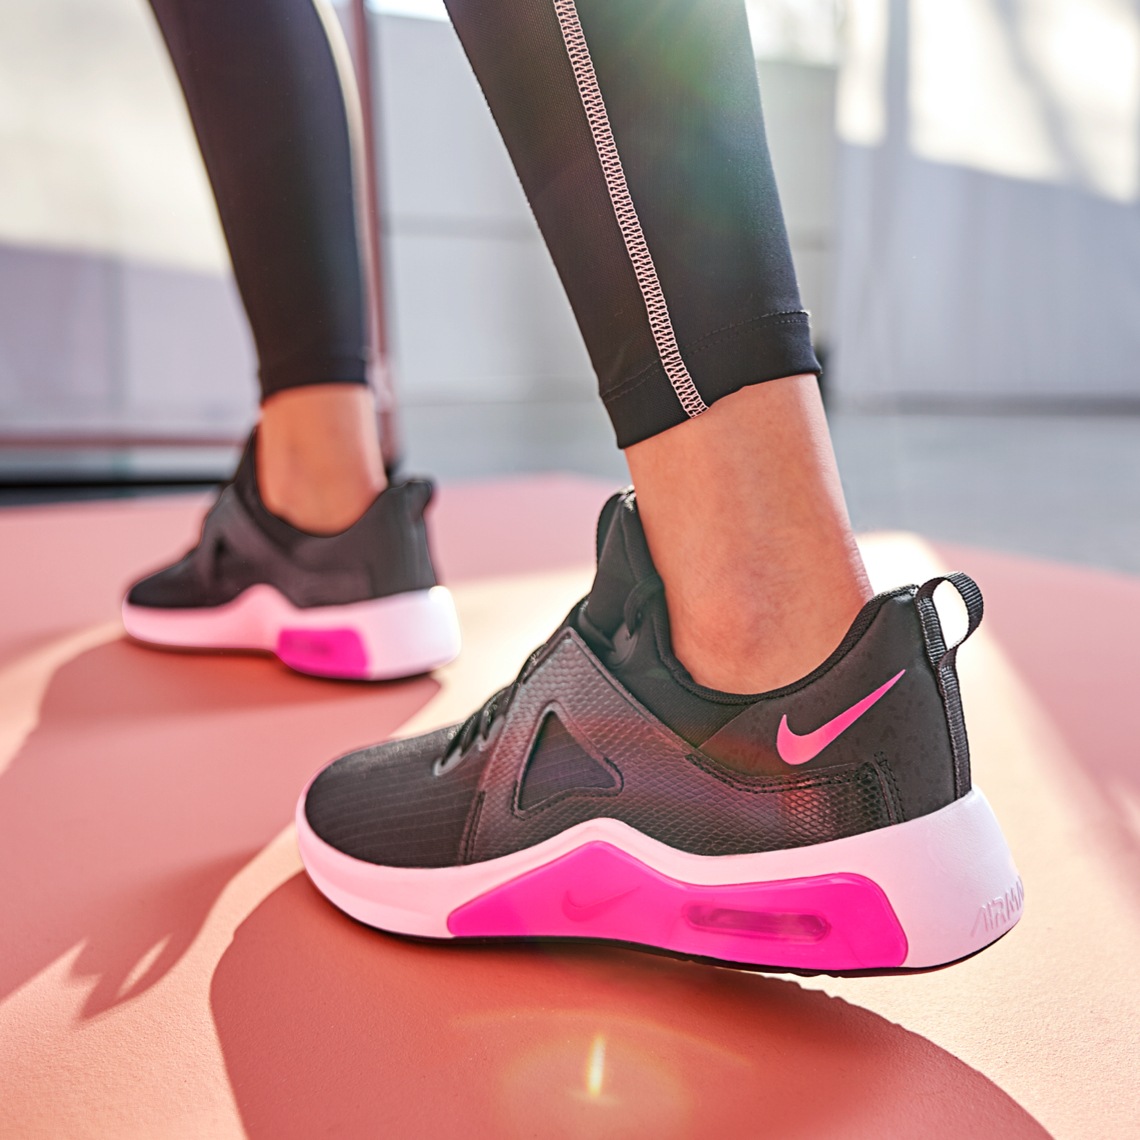 Nike training shoes